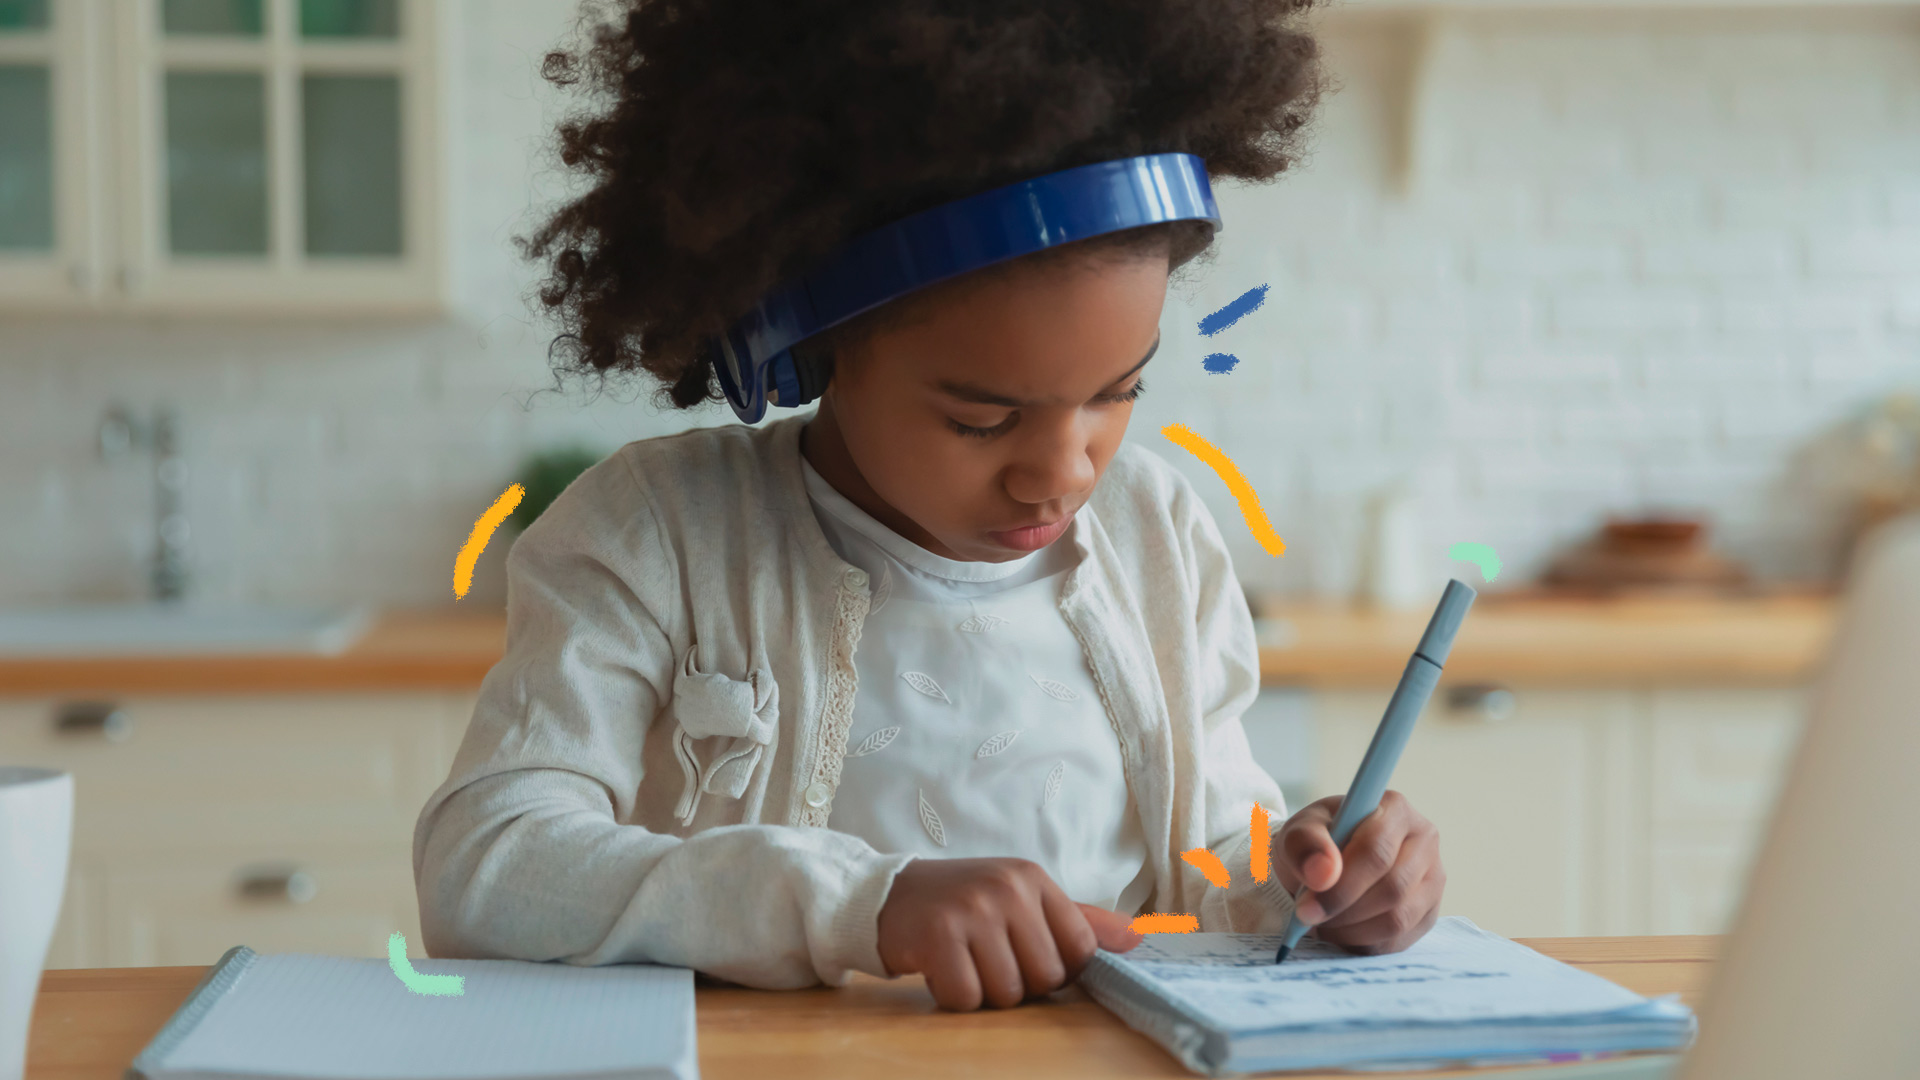 Criança, de pele negra, vestindo roupa branca, está escrevendo em um caderno com um fone de ouvido, em modo de educação domiciliar